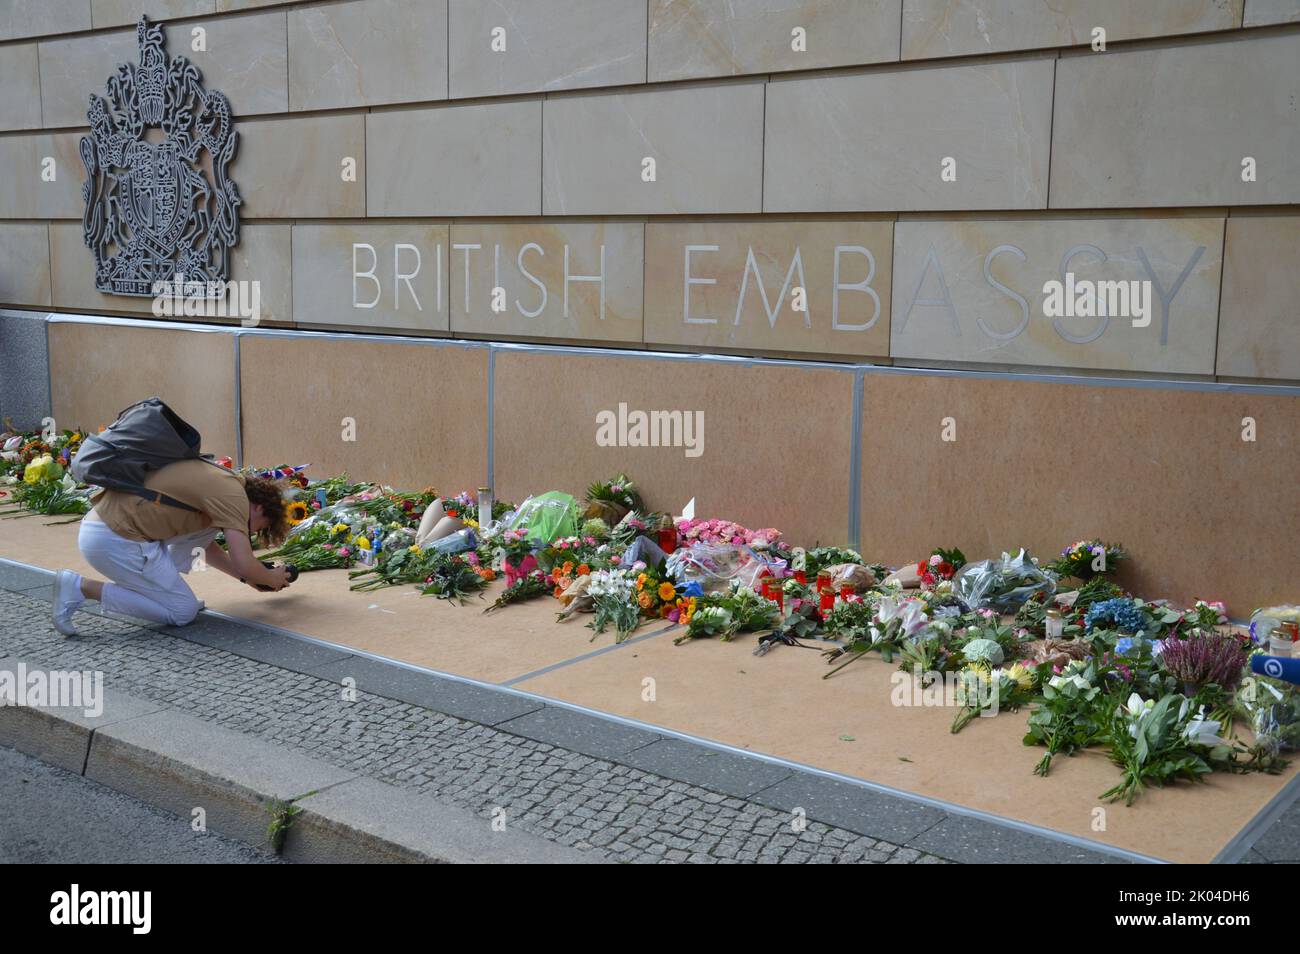 Berlin, Allemagne - 9 septembre 2022 - décès de la reine Elisabet II - Hommages devant l'ambassade britannique à Berlin. (Photo de Markku Rainer Peltonen) Banque D'Images